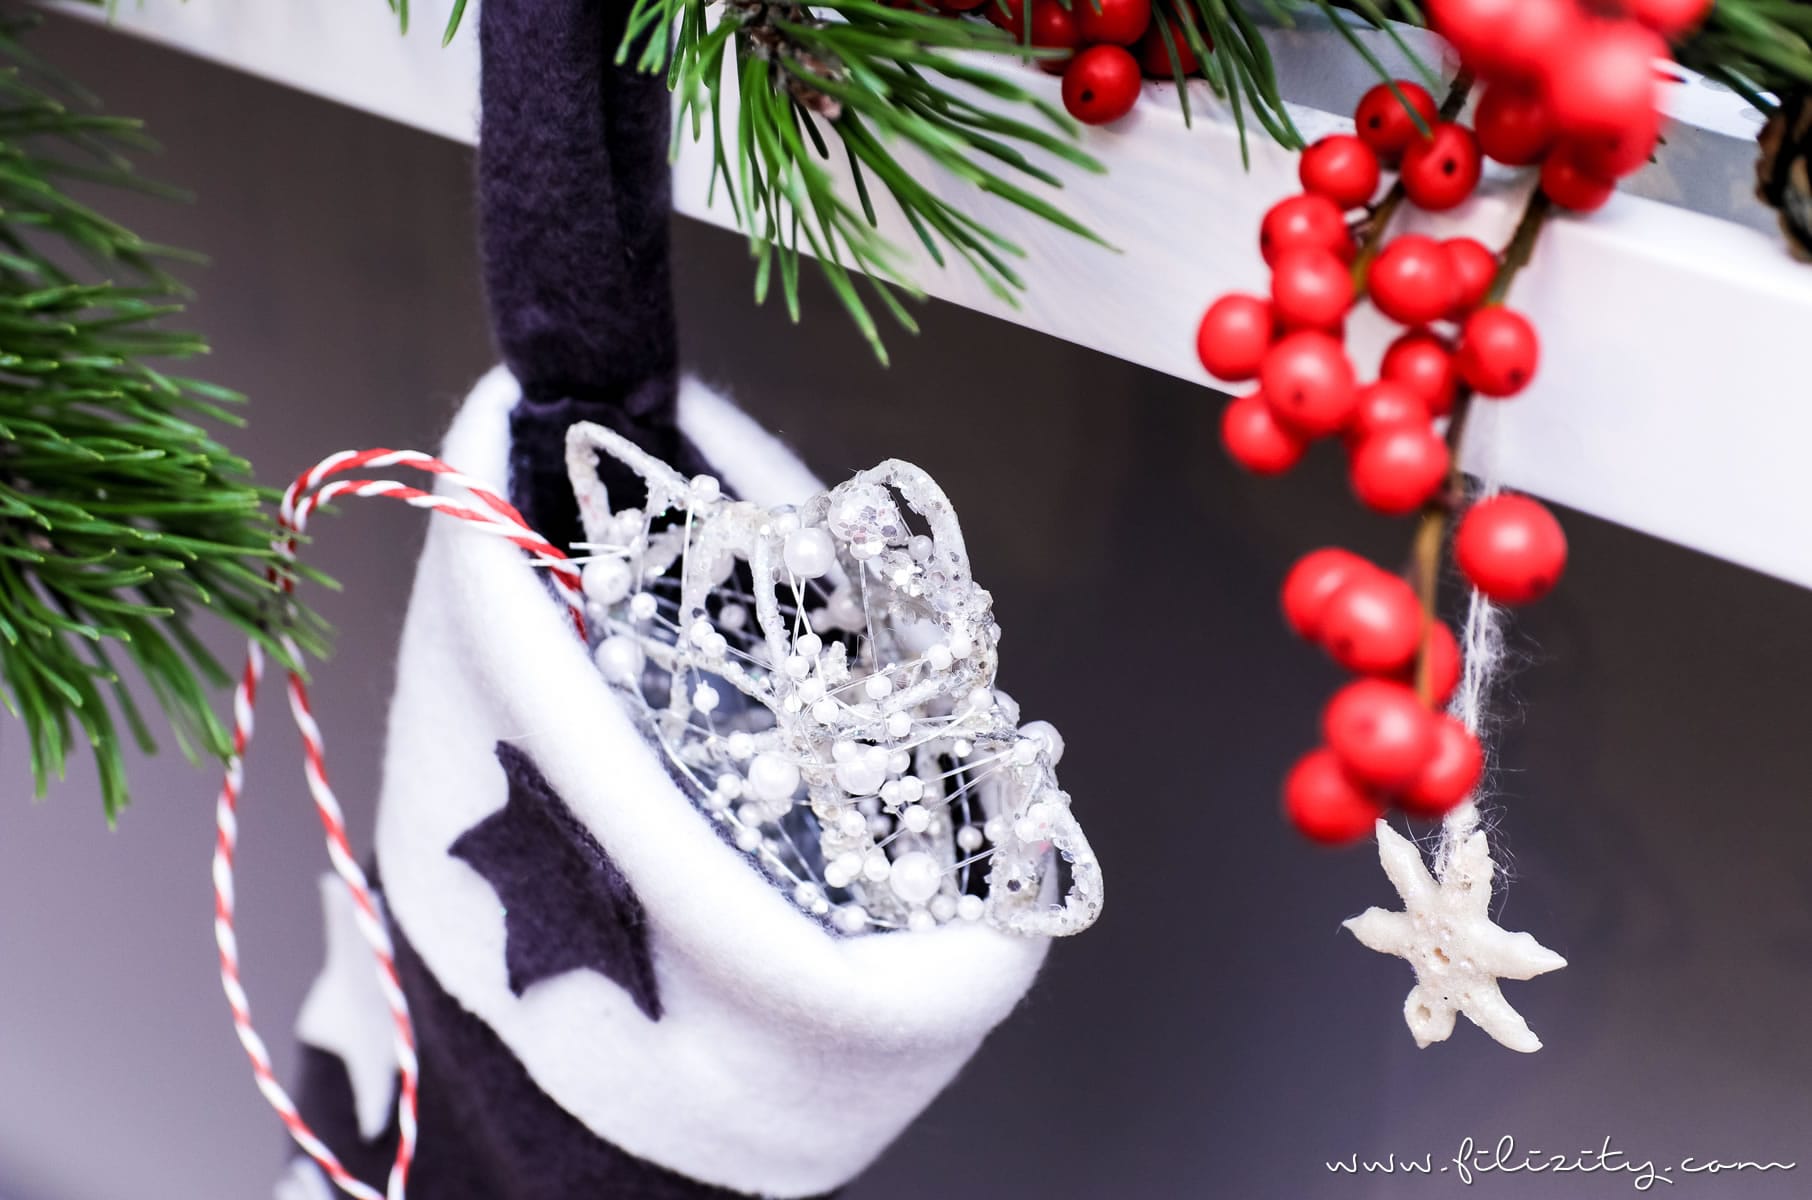 Basteln in der Weihnachtszeit: Nikolausstiefel nähen | Filizity.com | DIY-Blog aus dem Rheinland #weihnachten #nikolaus #nähen #geschenkideen